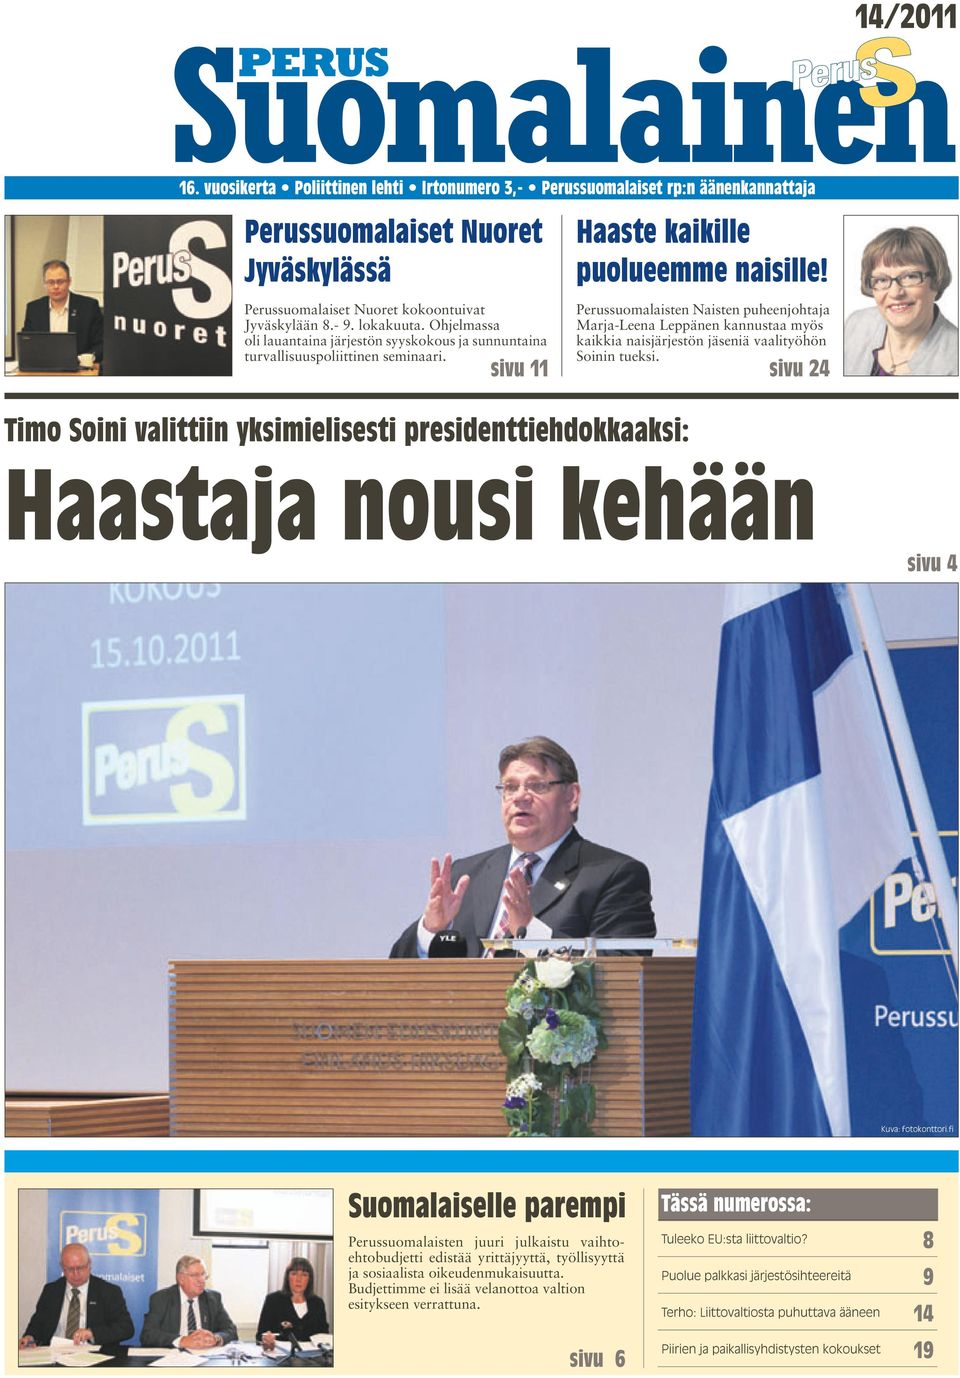 sivu 11 Timo Soini valittiin yksimielisesti presidenttiehdokkaaksi: Haaste kaikille puolueemme naisille!